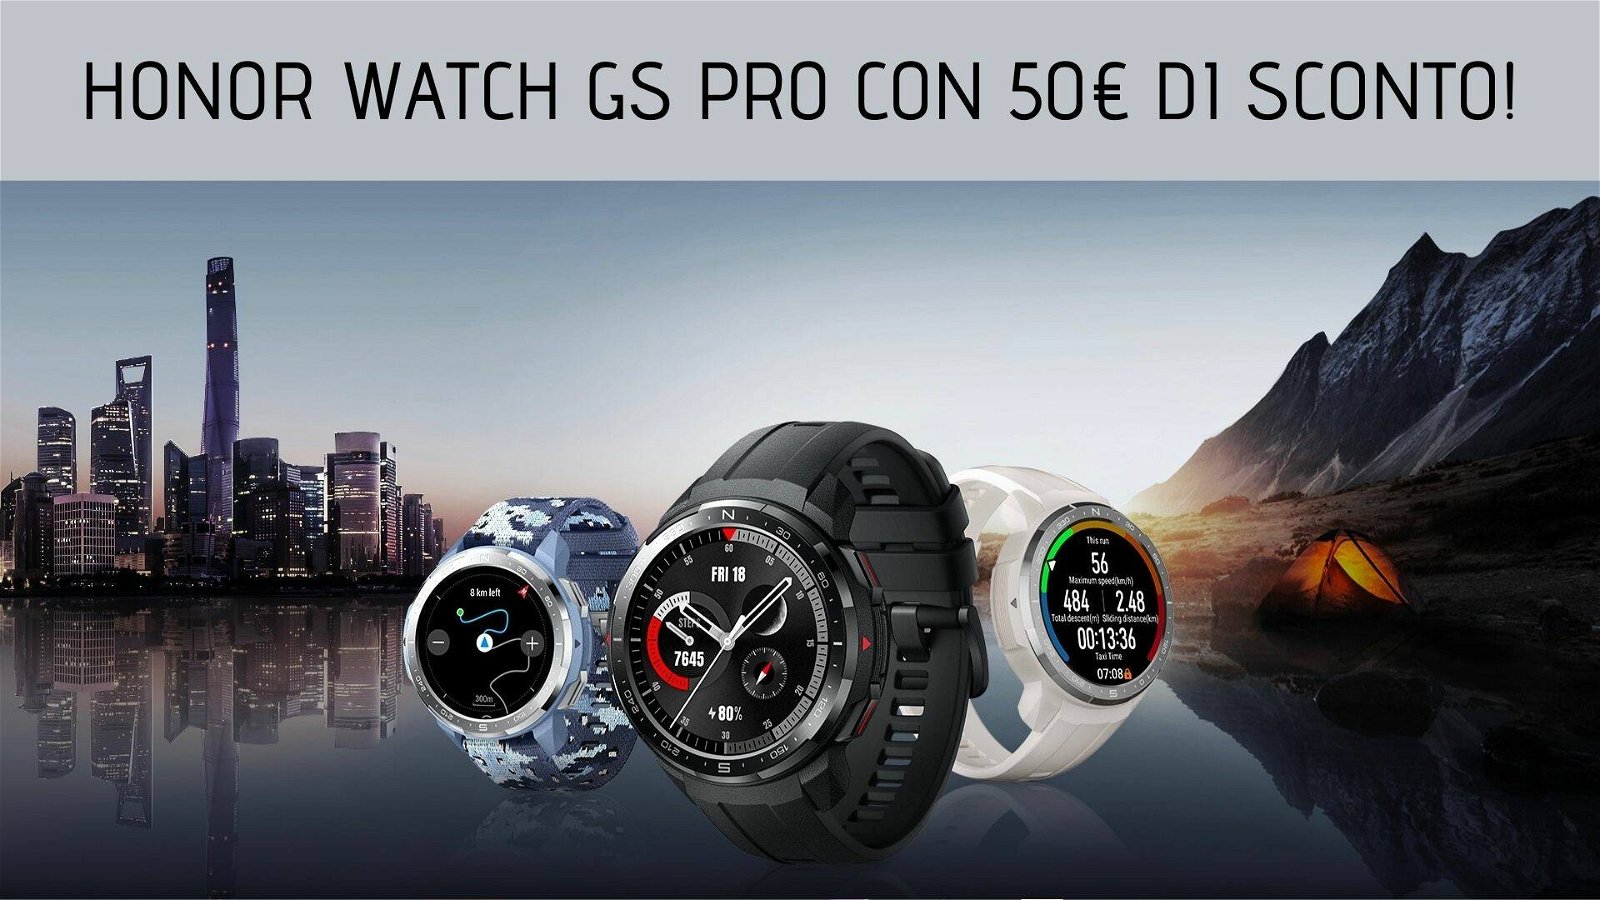 Immagine di Honor Watch GS Pro in promo lancio con 50€ di sconto!